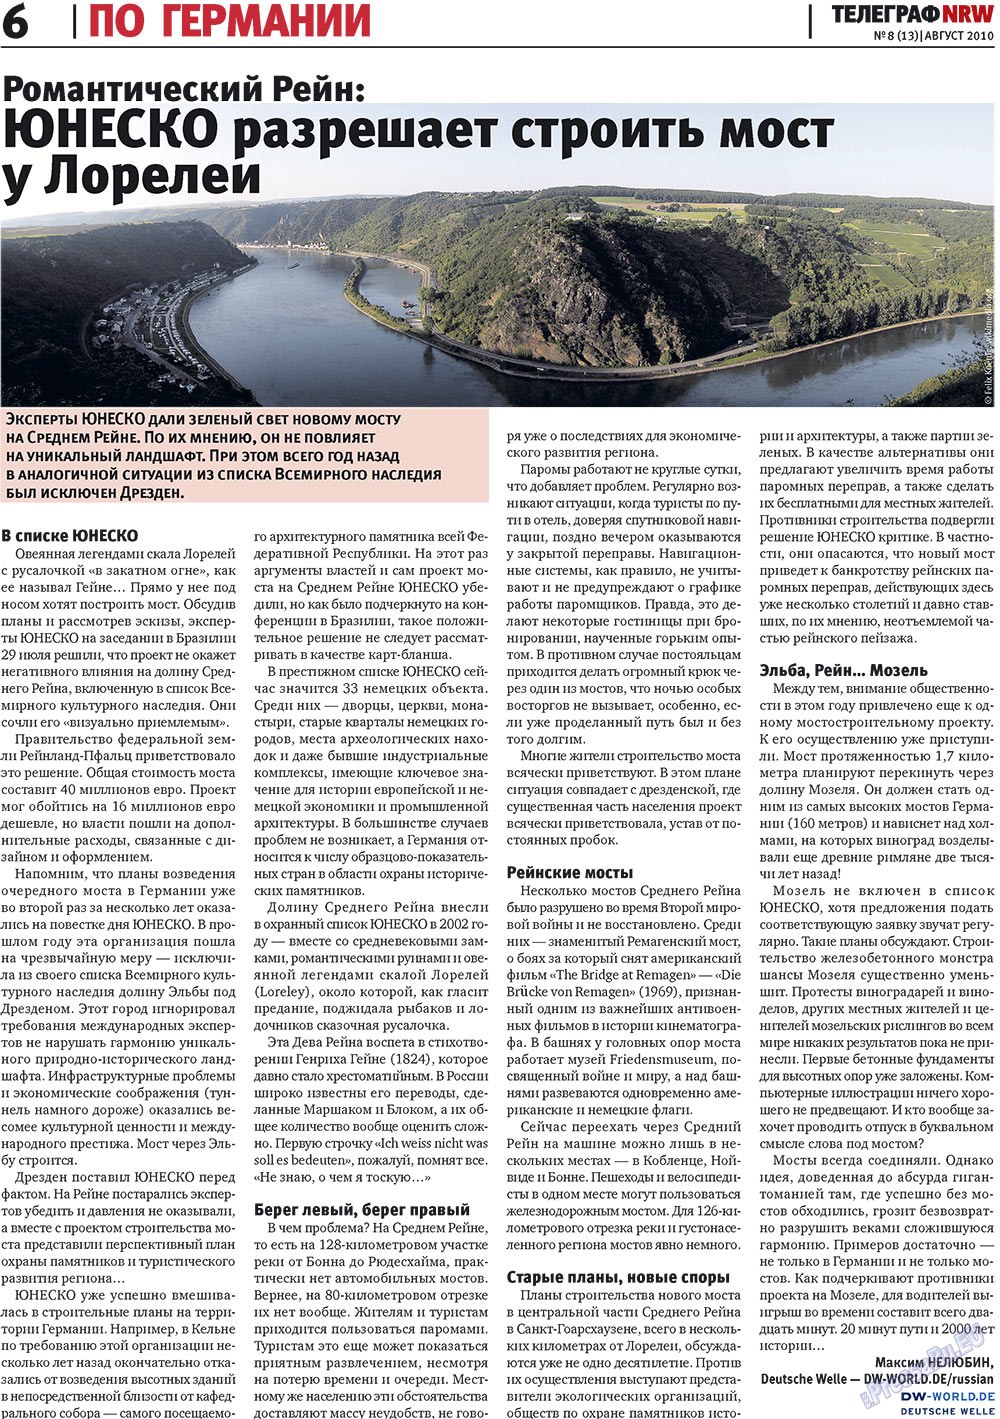 Telegraf NRW (Zeitung). 2010 Jahr, Ausgabe 8, Seite 6